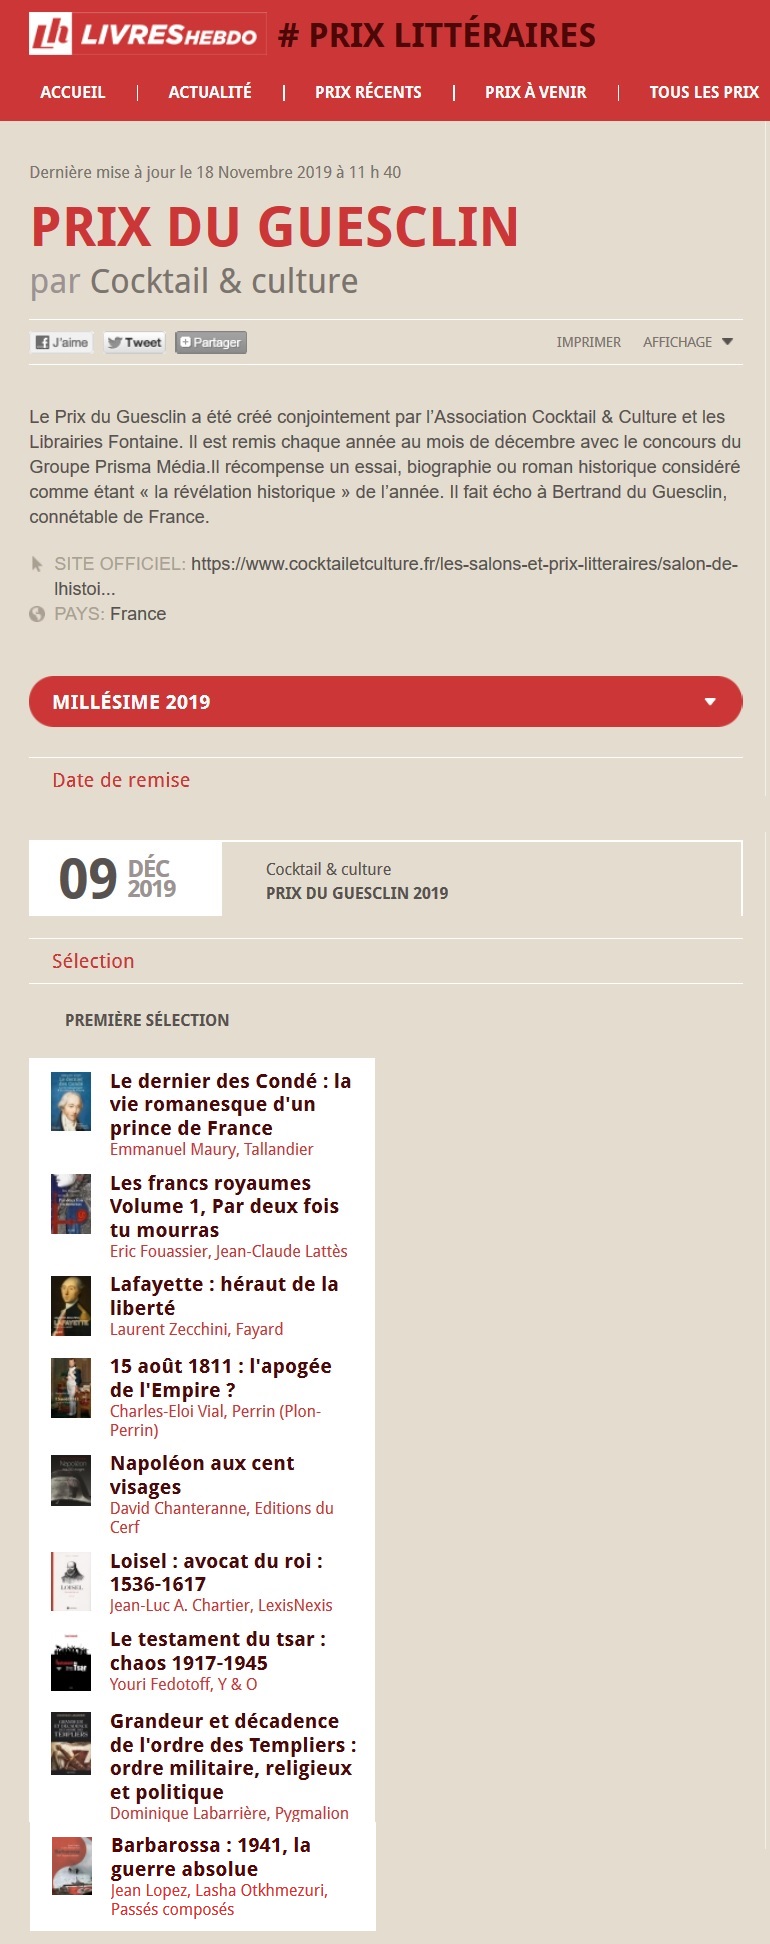 Article Livres Hebdo Finalistes Prix du Guesclin 2019